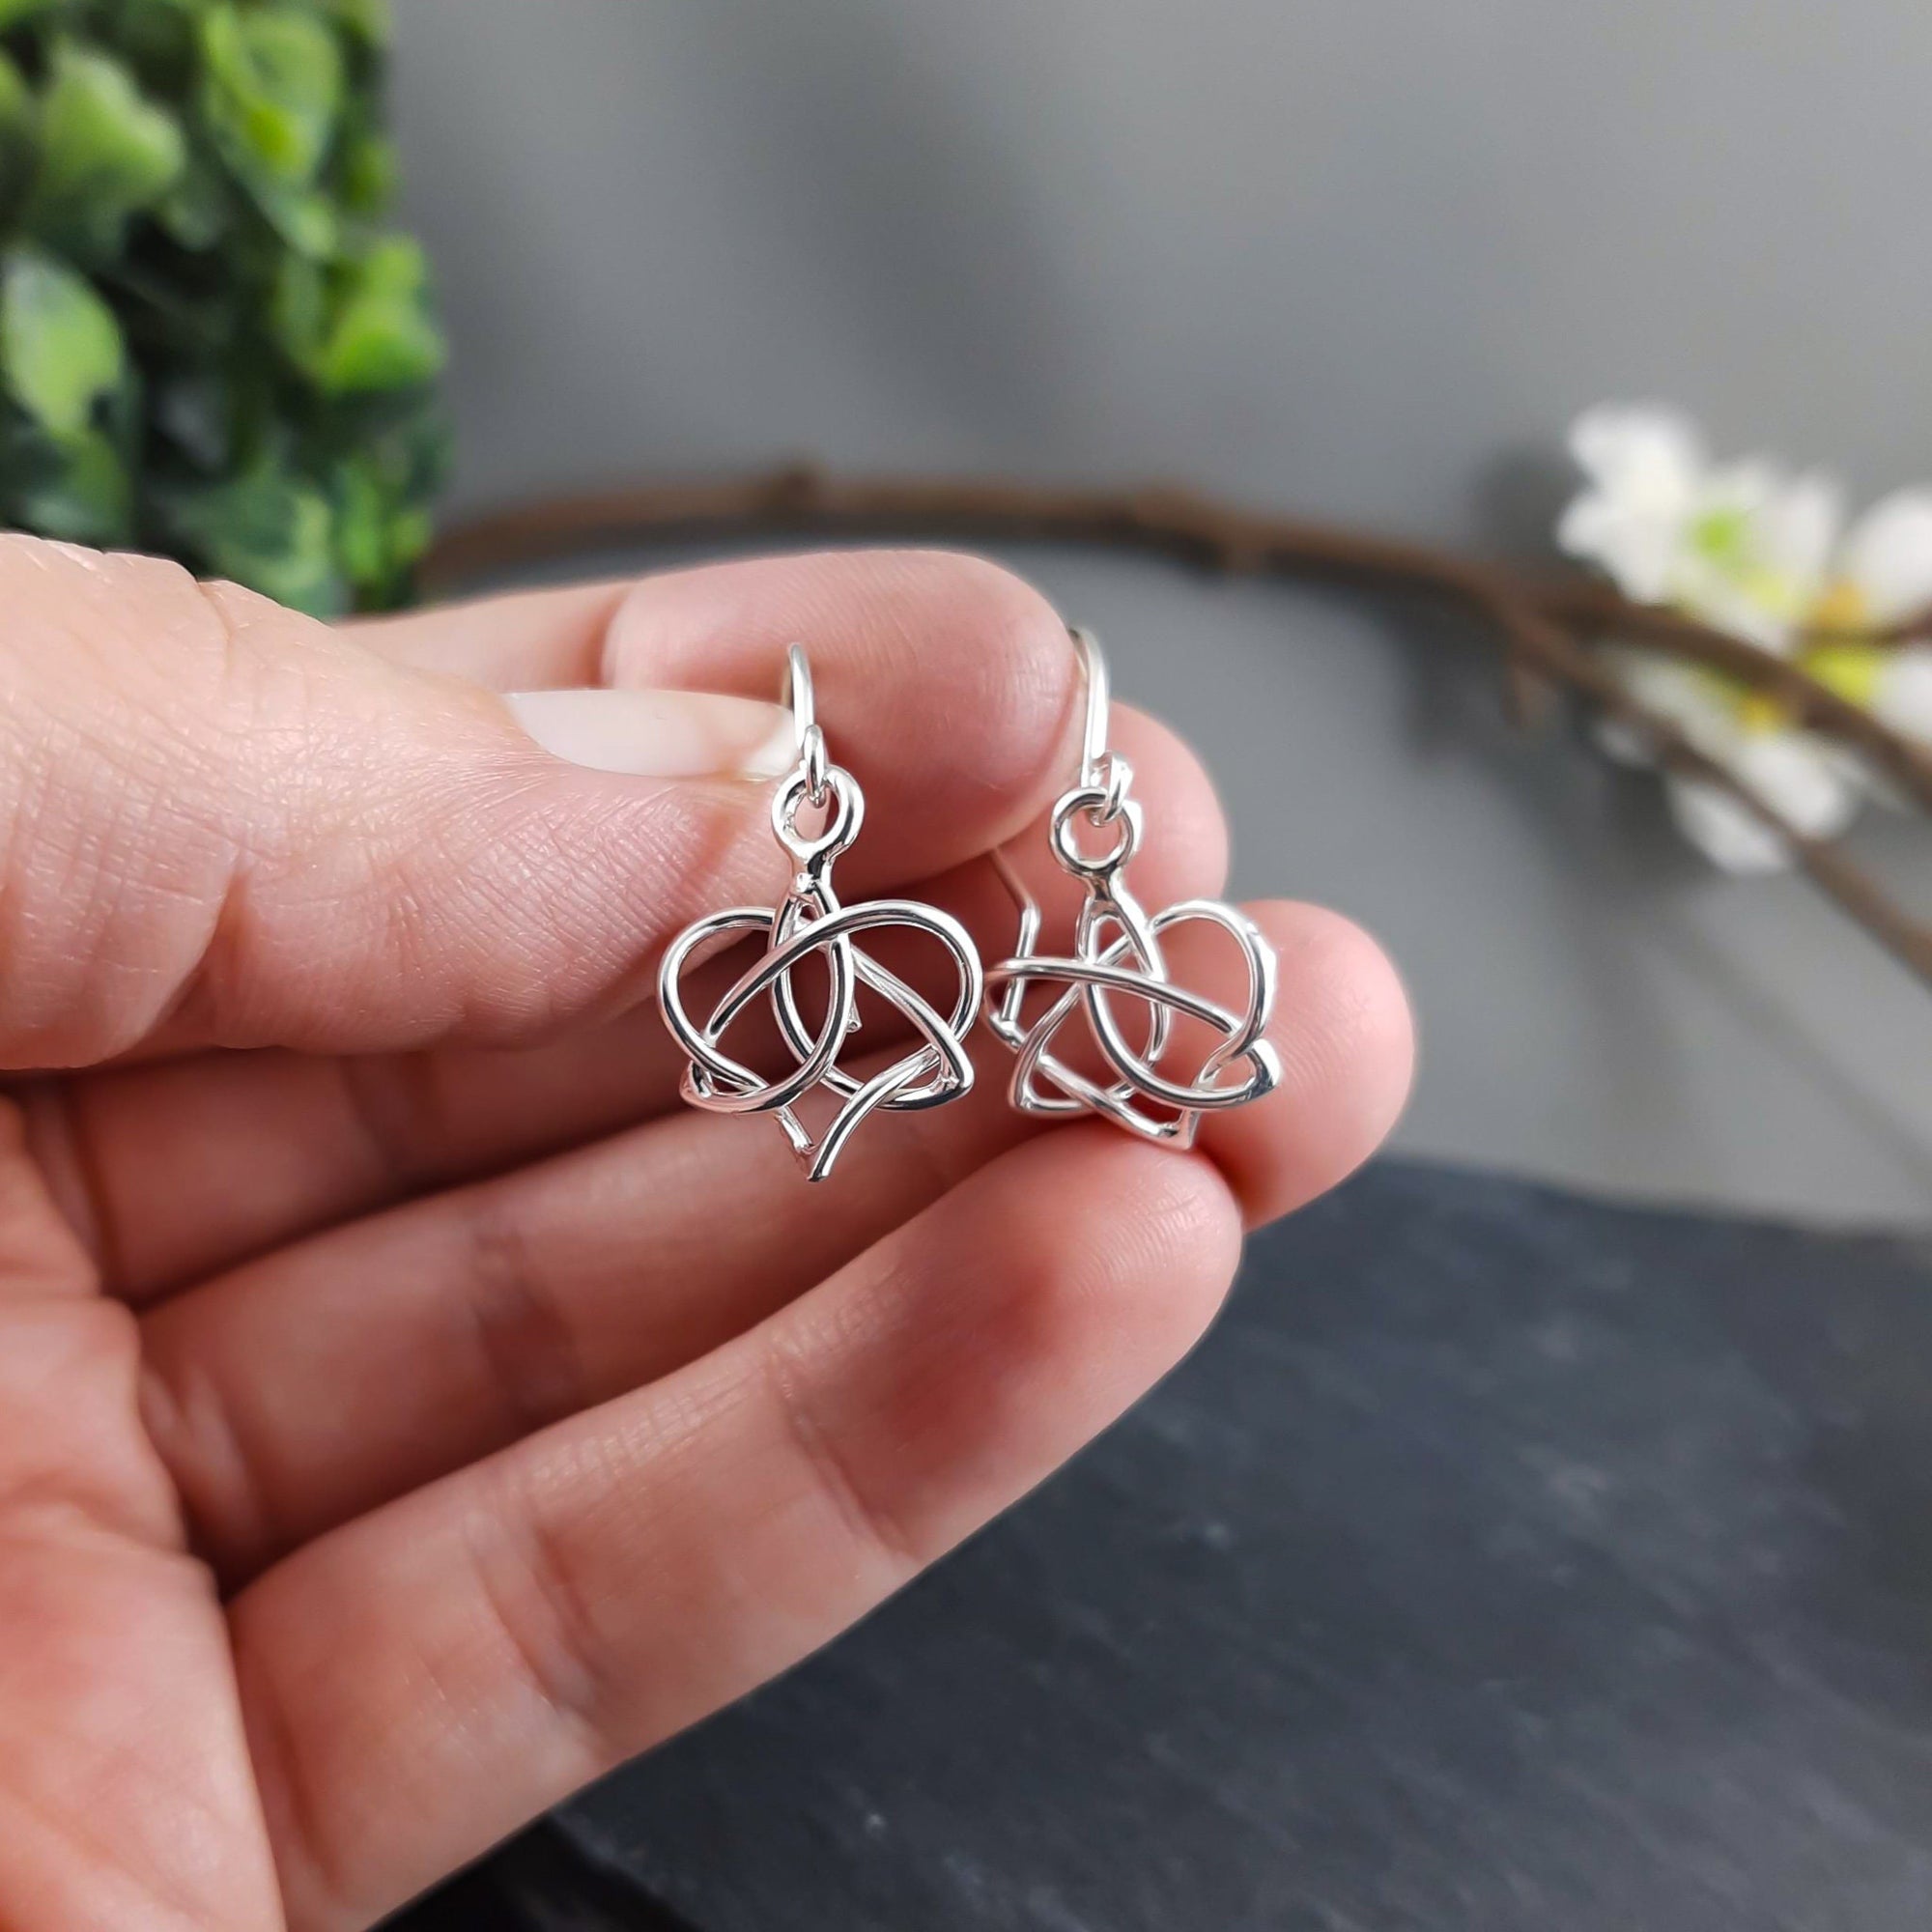 Celtic knot earrings in sterling silver